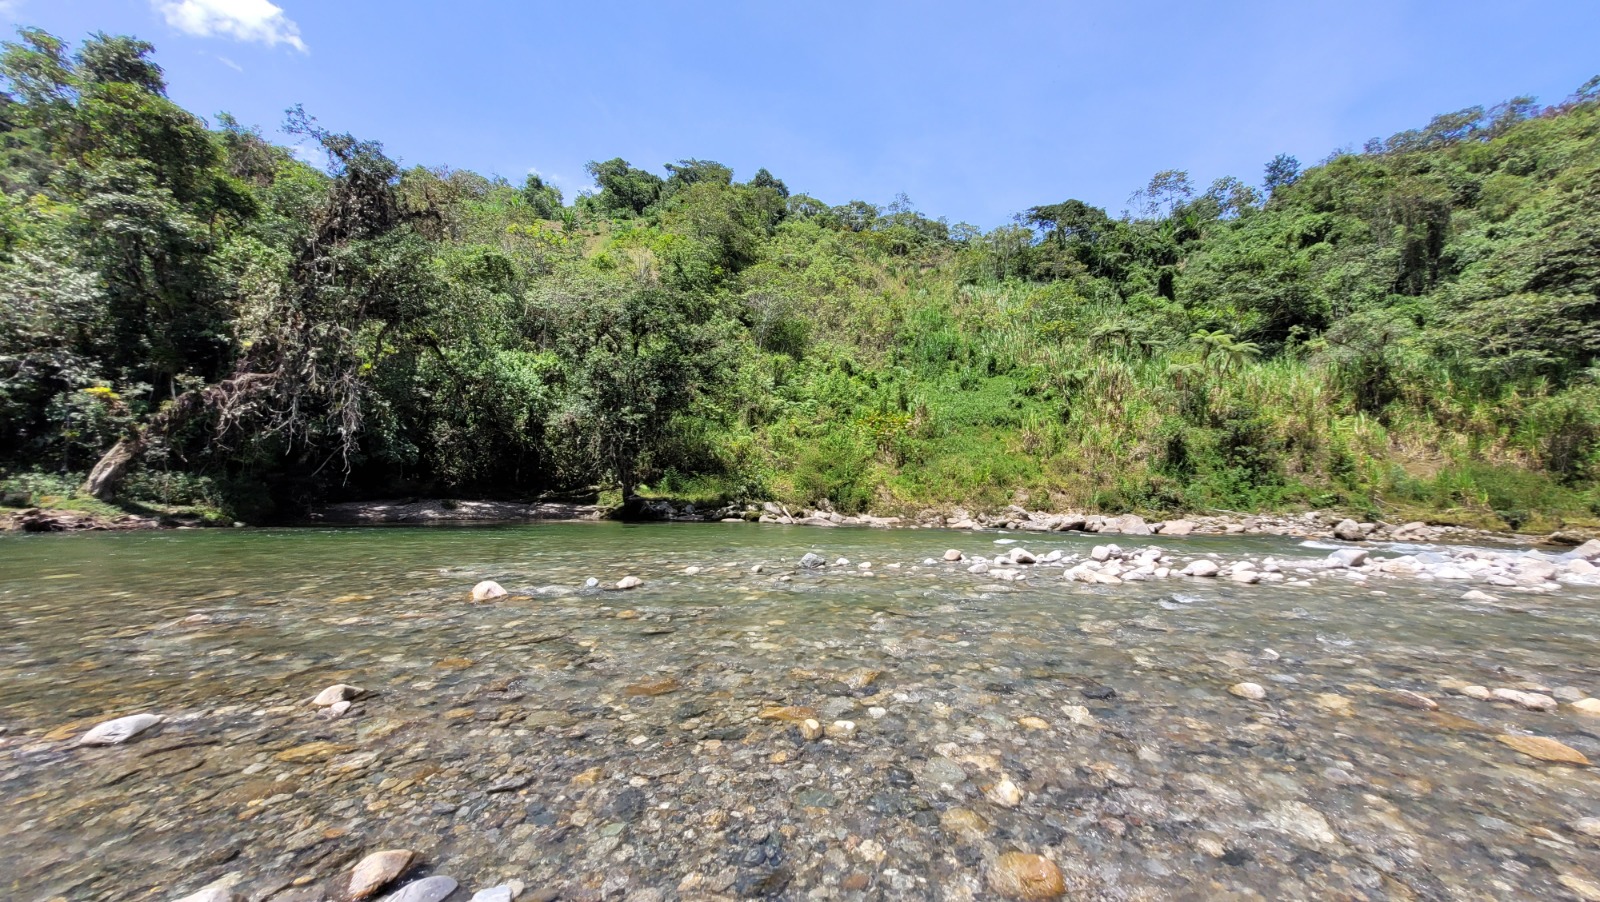 Proteger y conservar los recursos hídricos, para nosotros y para las generaciones futuras. En la región andina CUIDAR derechos agua y resiliencia en cuencas amazónicas para el período 2022-2026.